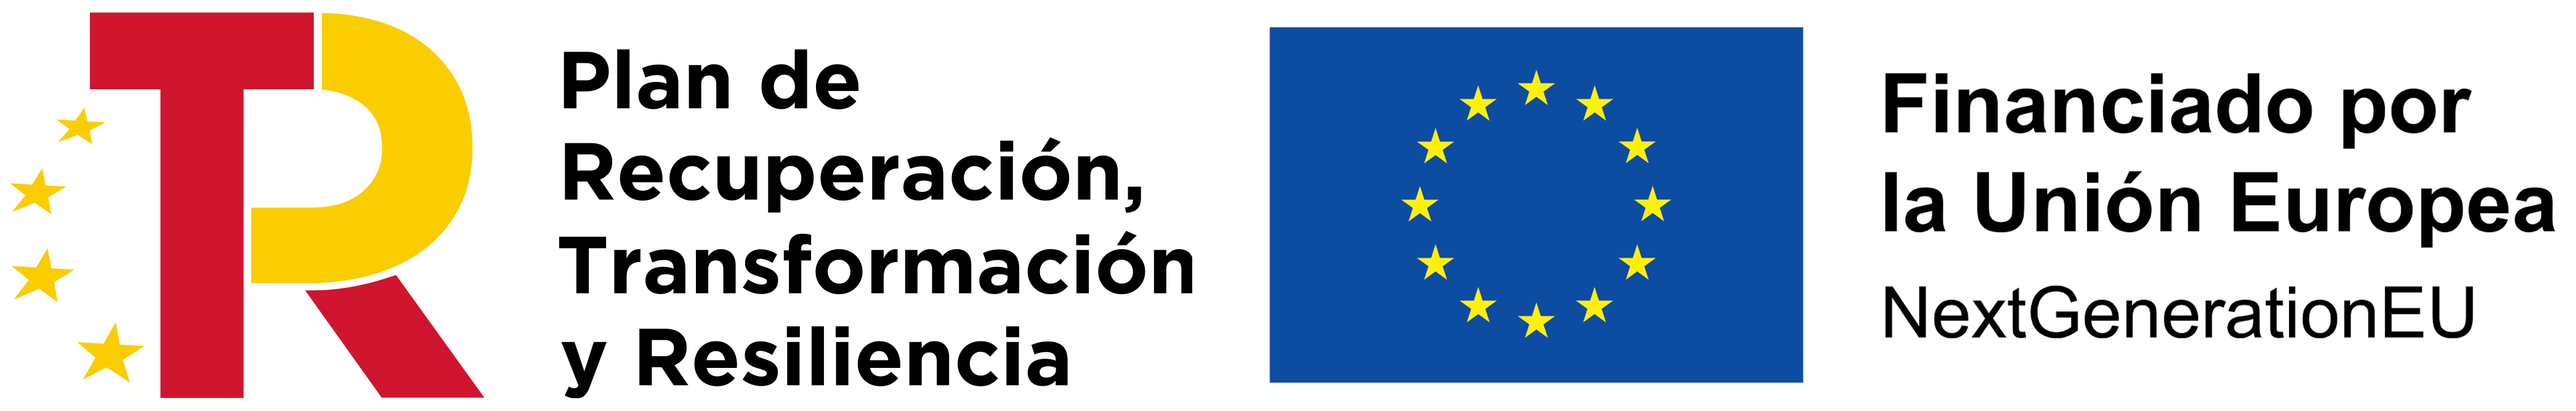 logos-plan-recuperación-union-europea